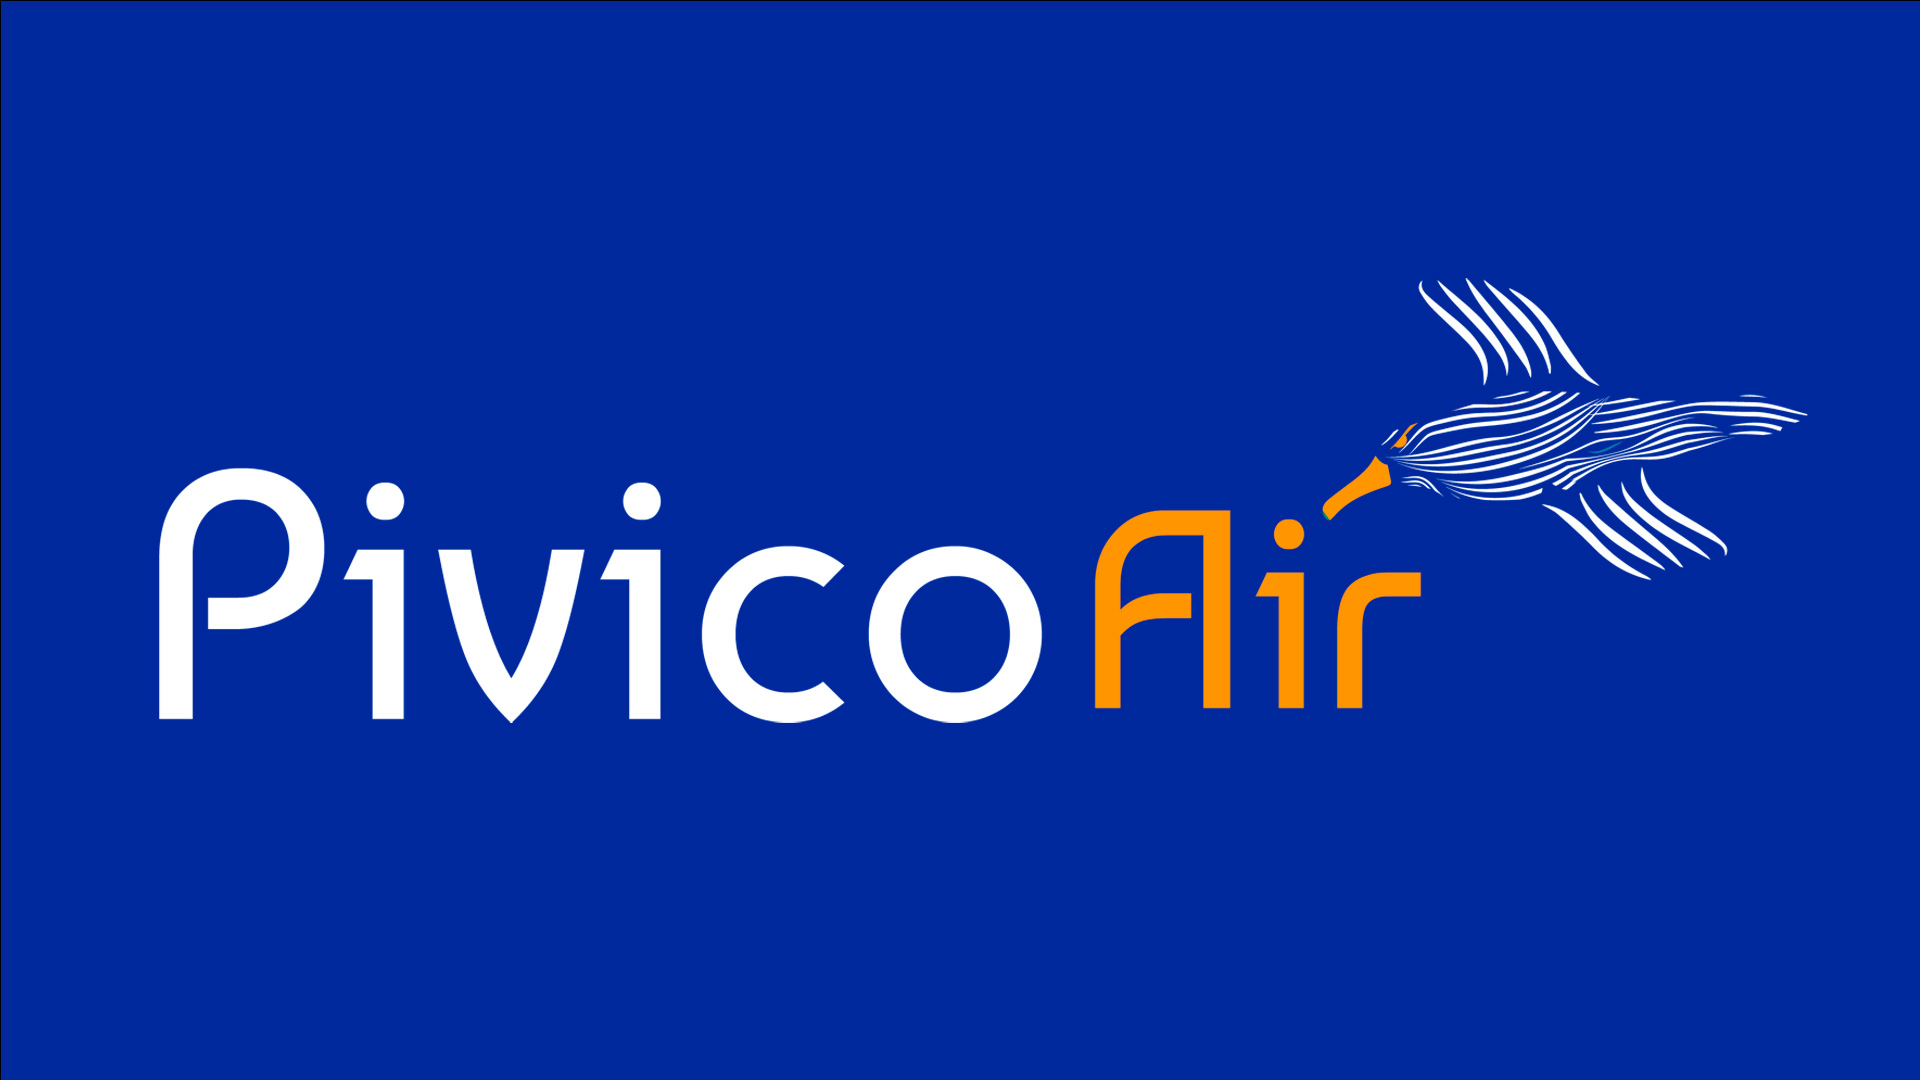 Pivico Air